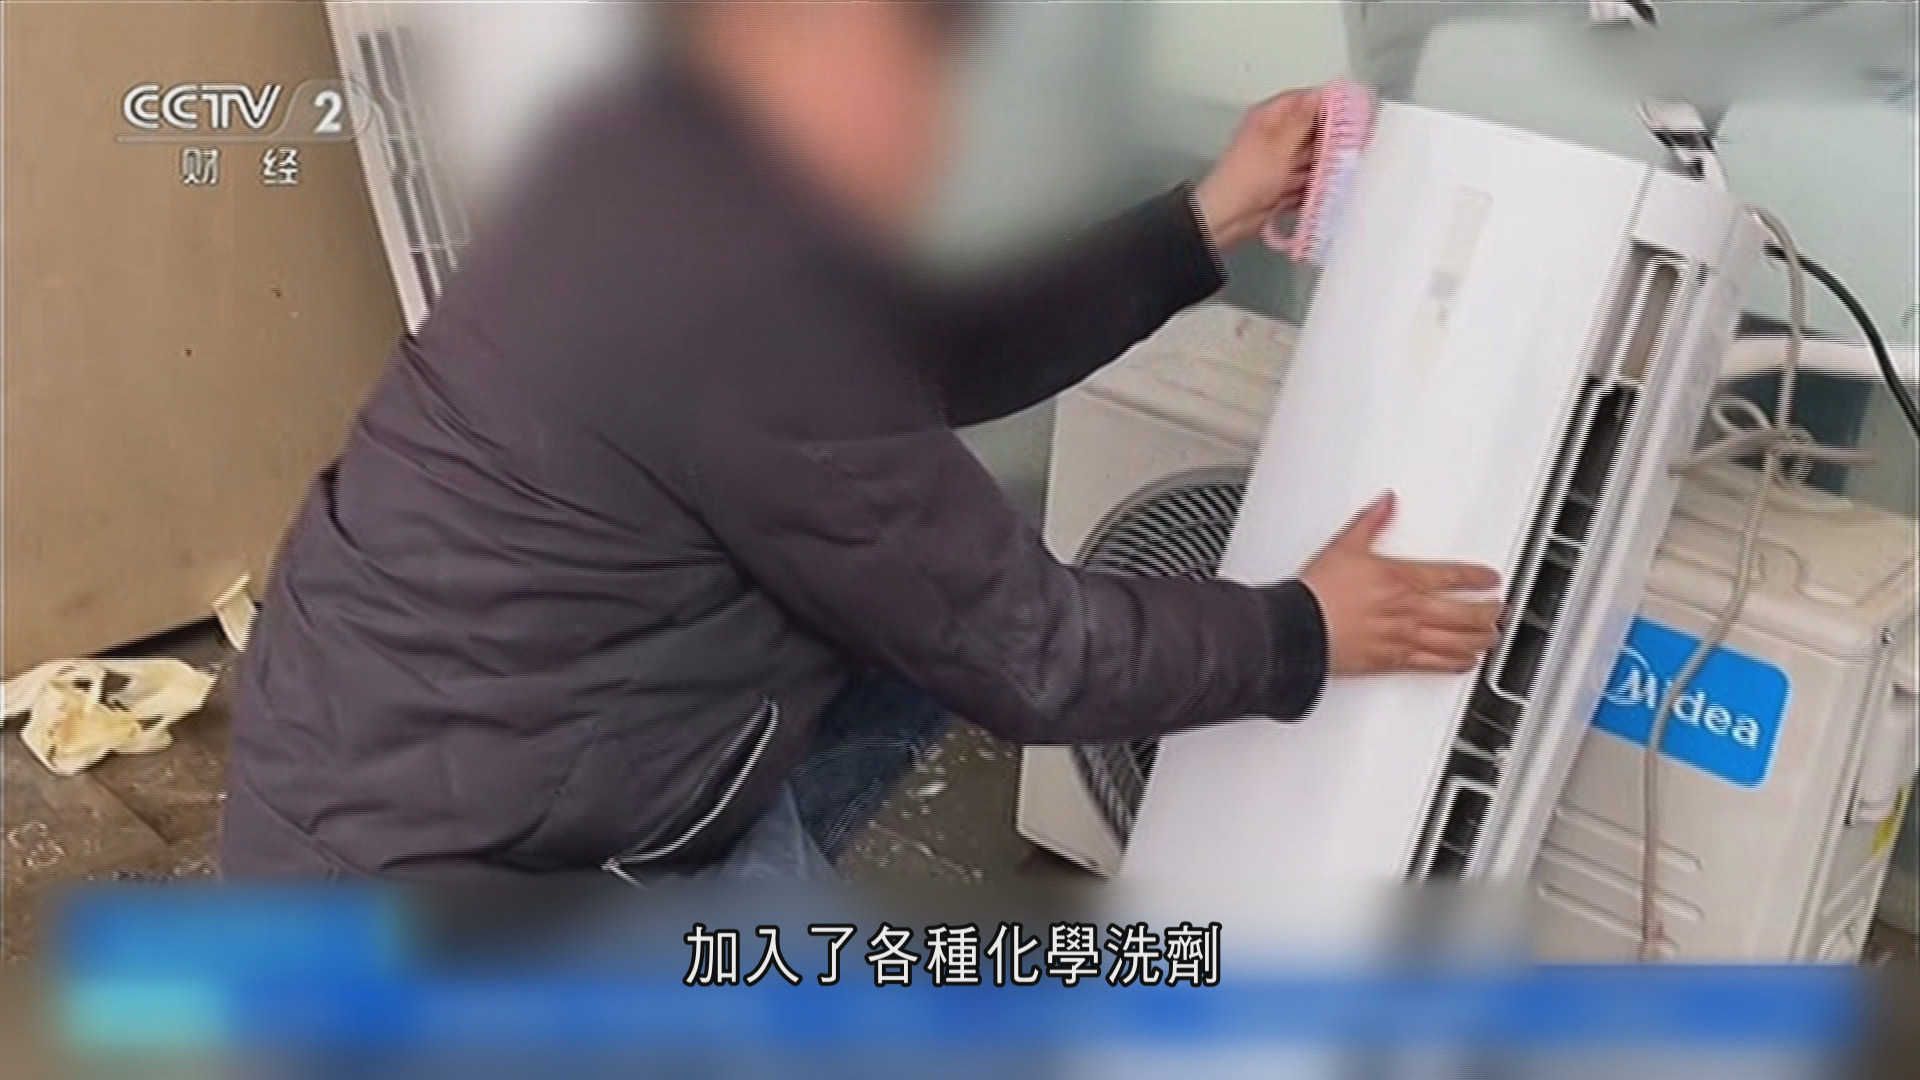 南京商家用致癌化學劑漂白翻新舊空調　冒充品牌機出售　當地政府已立案調查